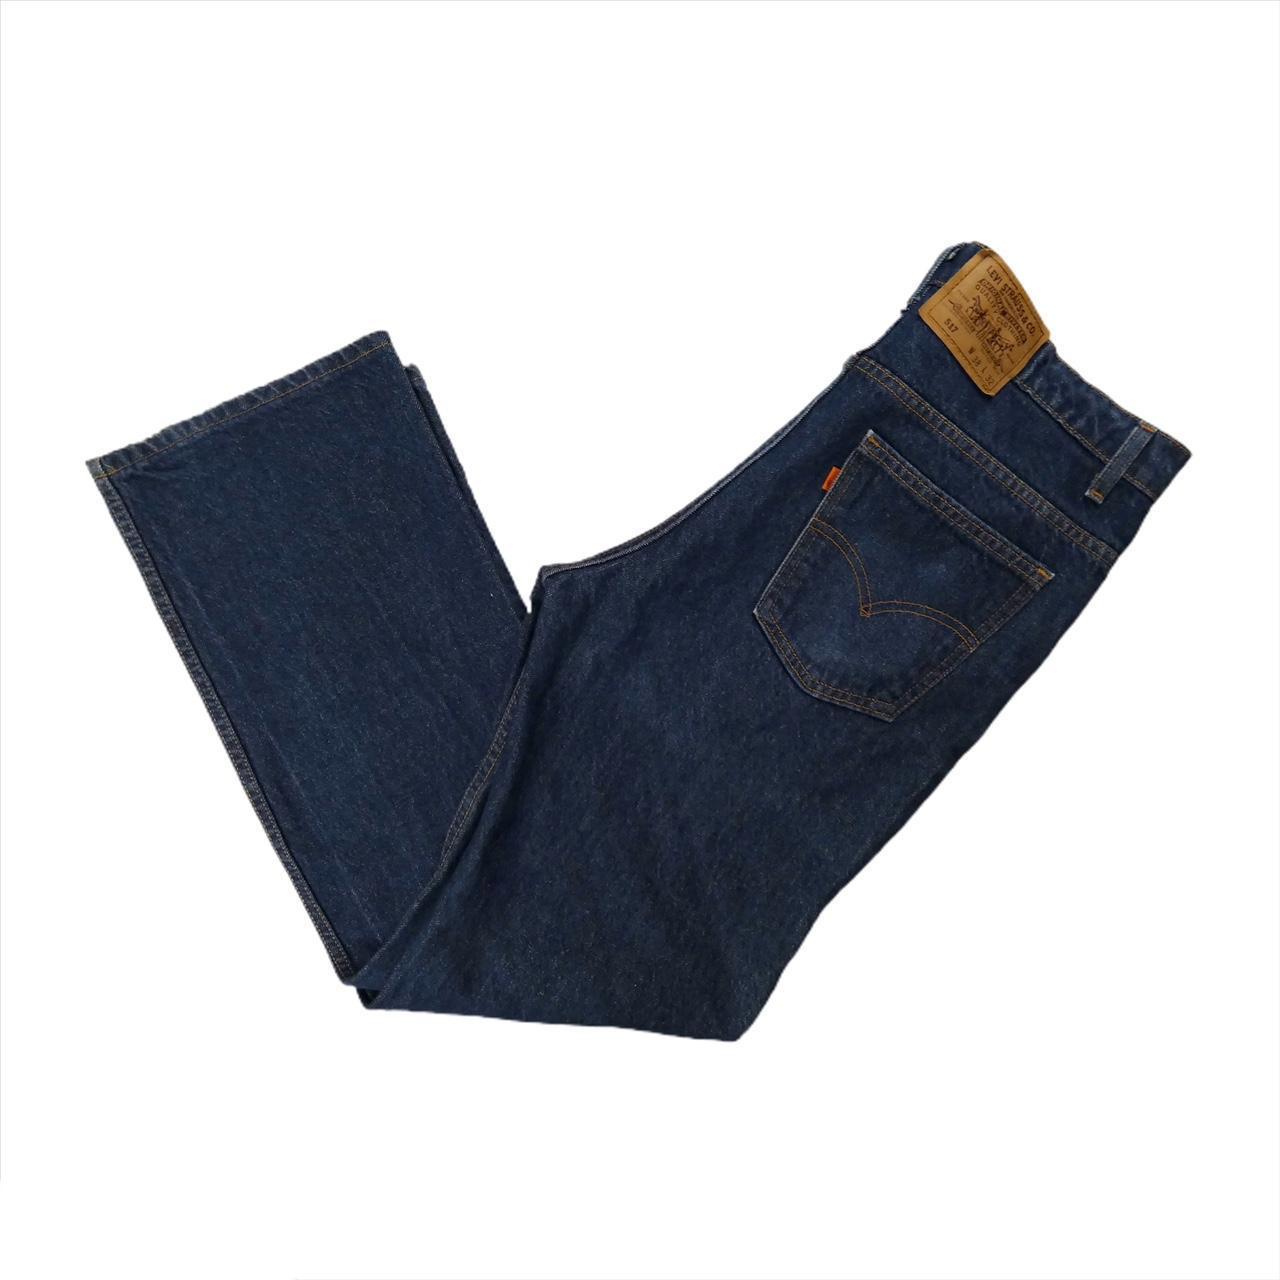 Levi's Men's Vintage 517 Bootcut Jeans Made in... - Depop